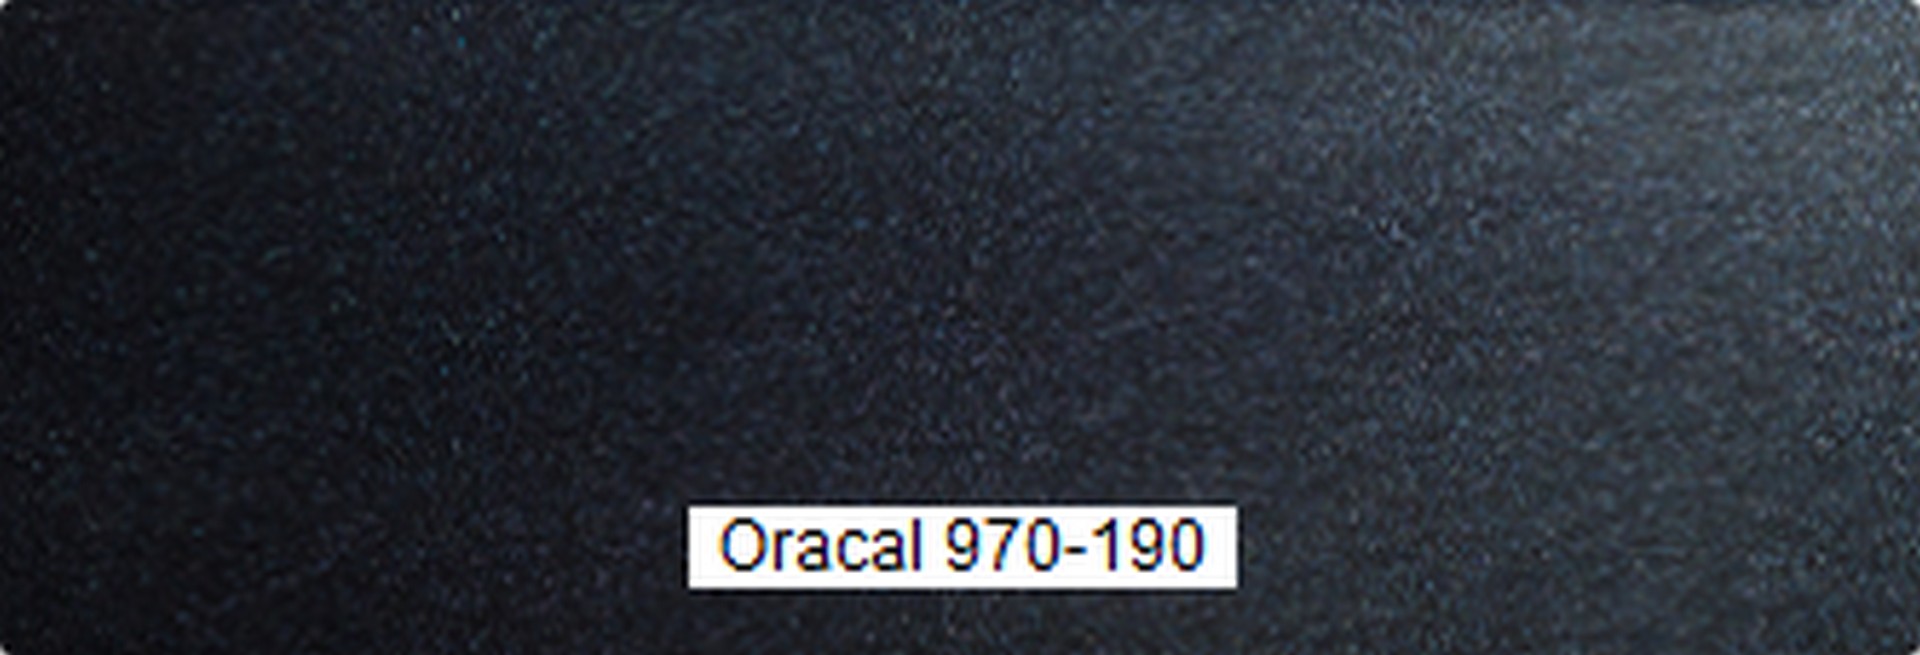 ORCAL 970-190